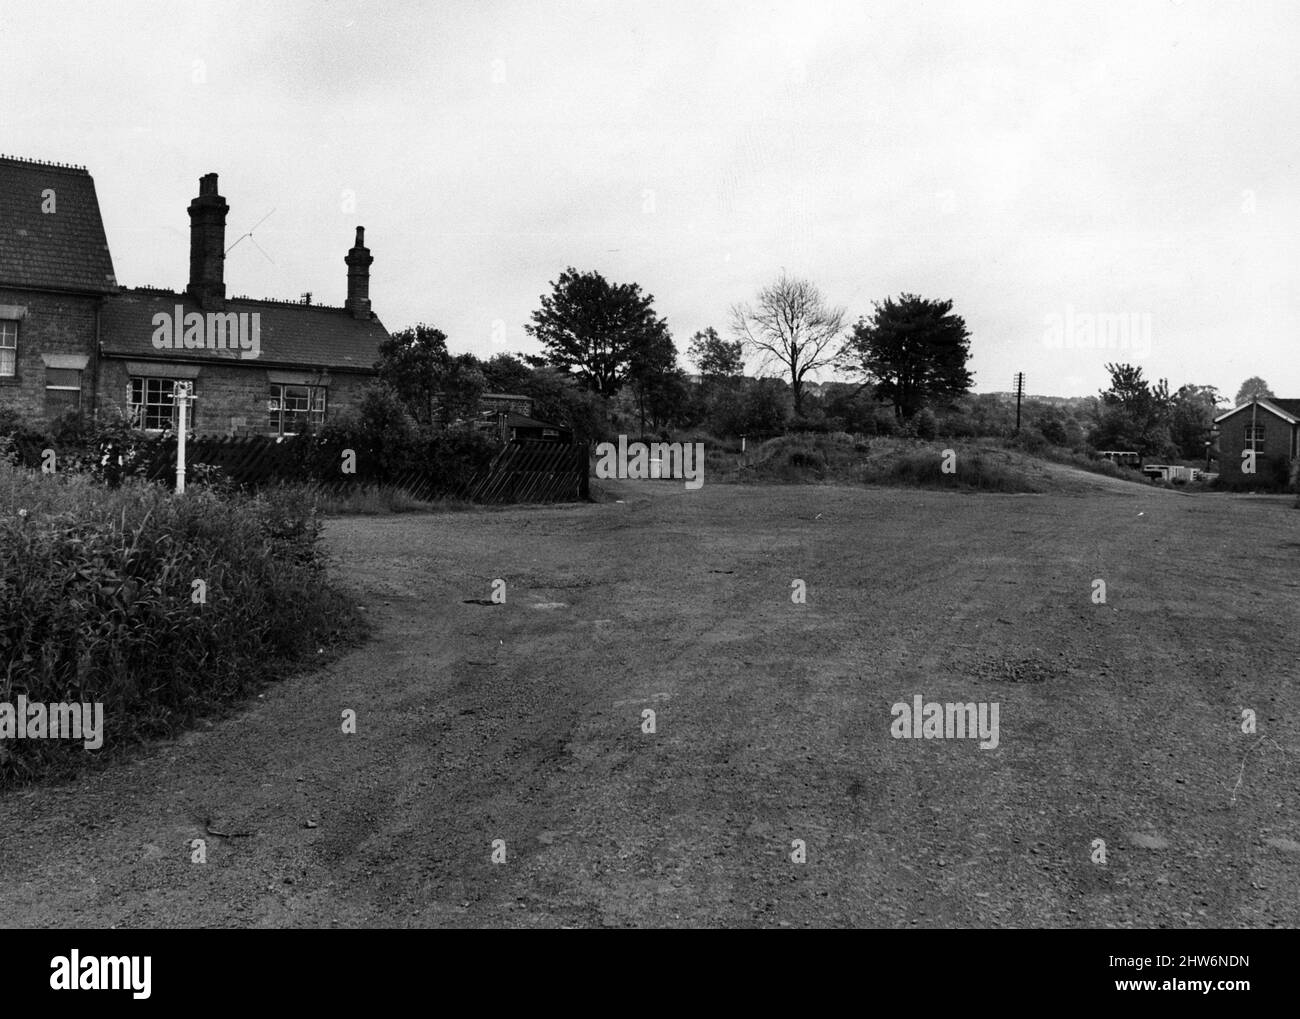 La strada che porta alla Stazione di Stockingford, Nuneaton. La stazione si trova sulla sinistra, sulla destra c'è l'area che le ferrovie britanniche sperano di sviluppare. 12th giugno 1968. Foto Stock